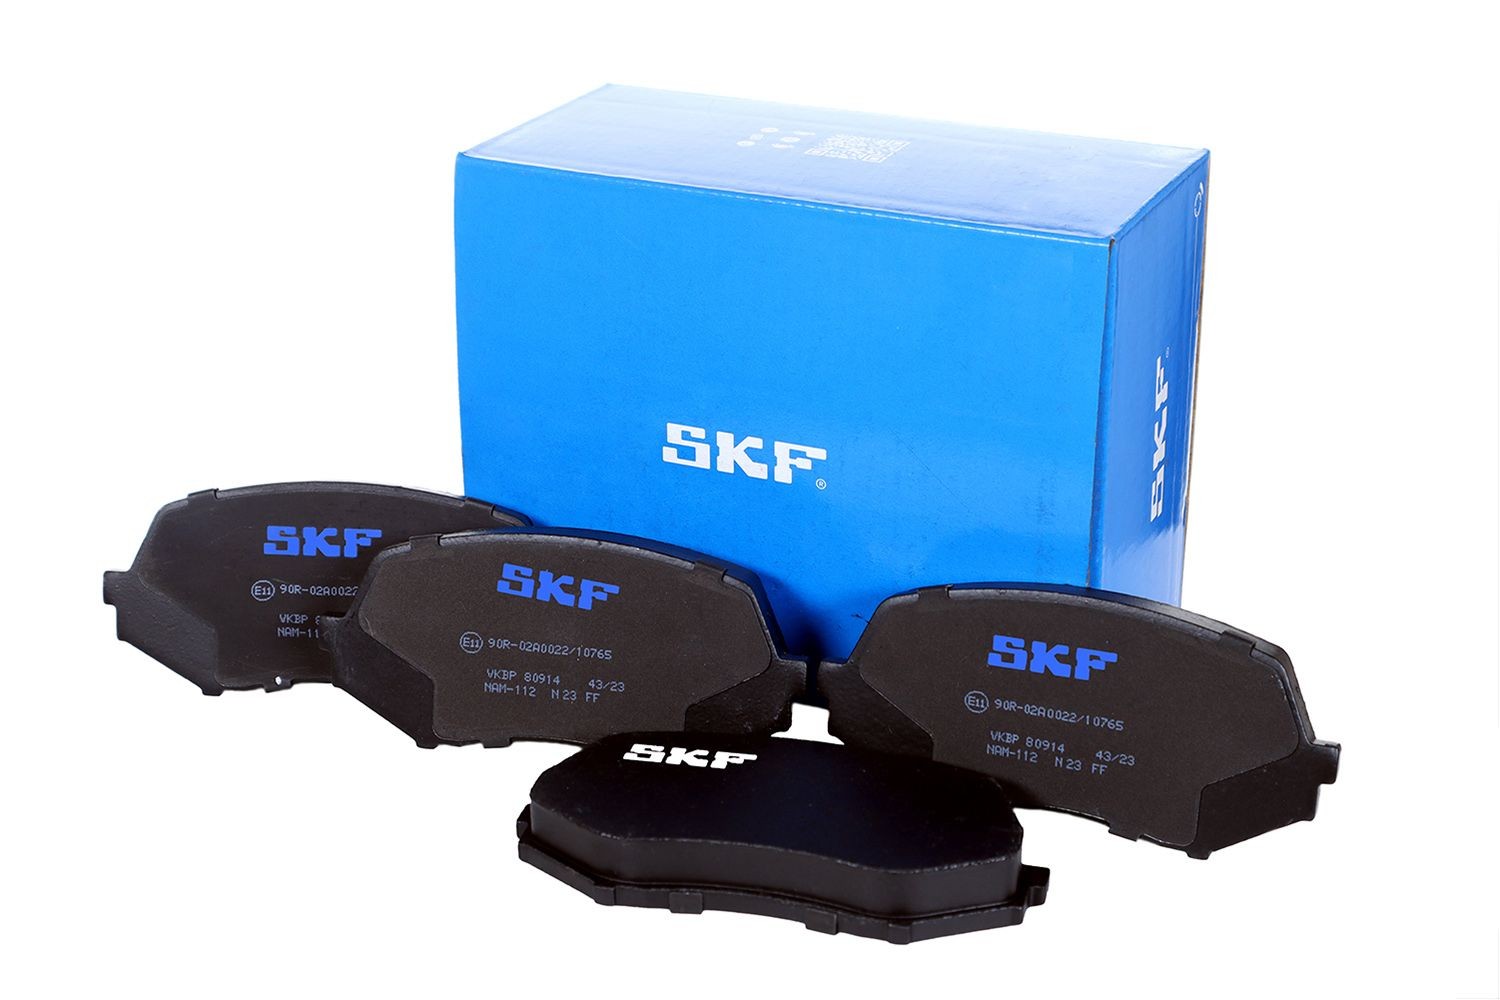 VKBP 80914 SKF Bremsbeläge für FORD online bestellen